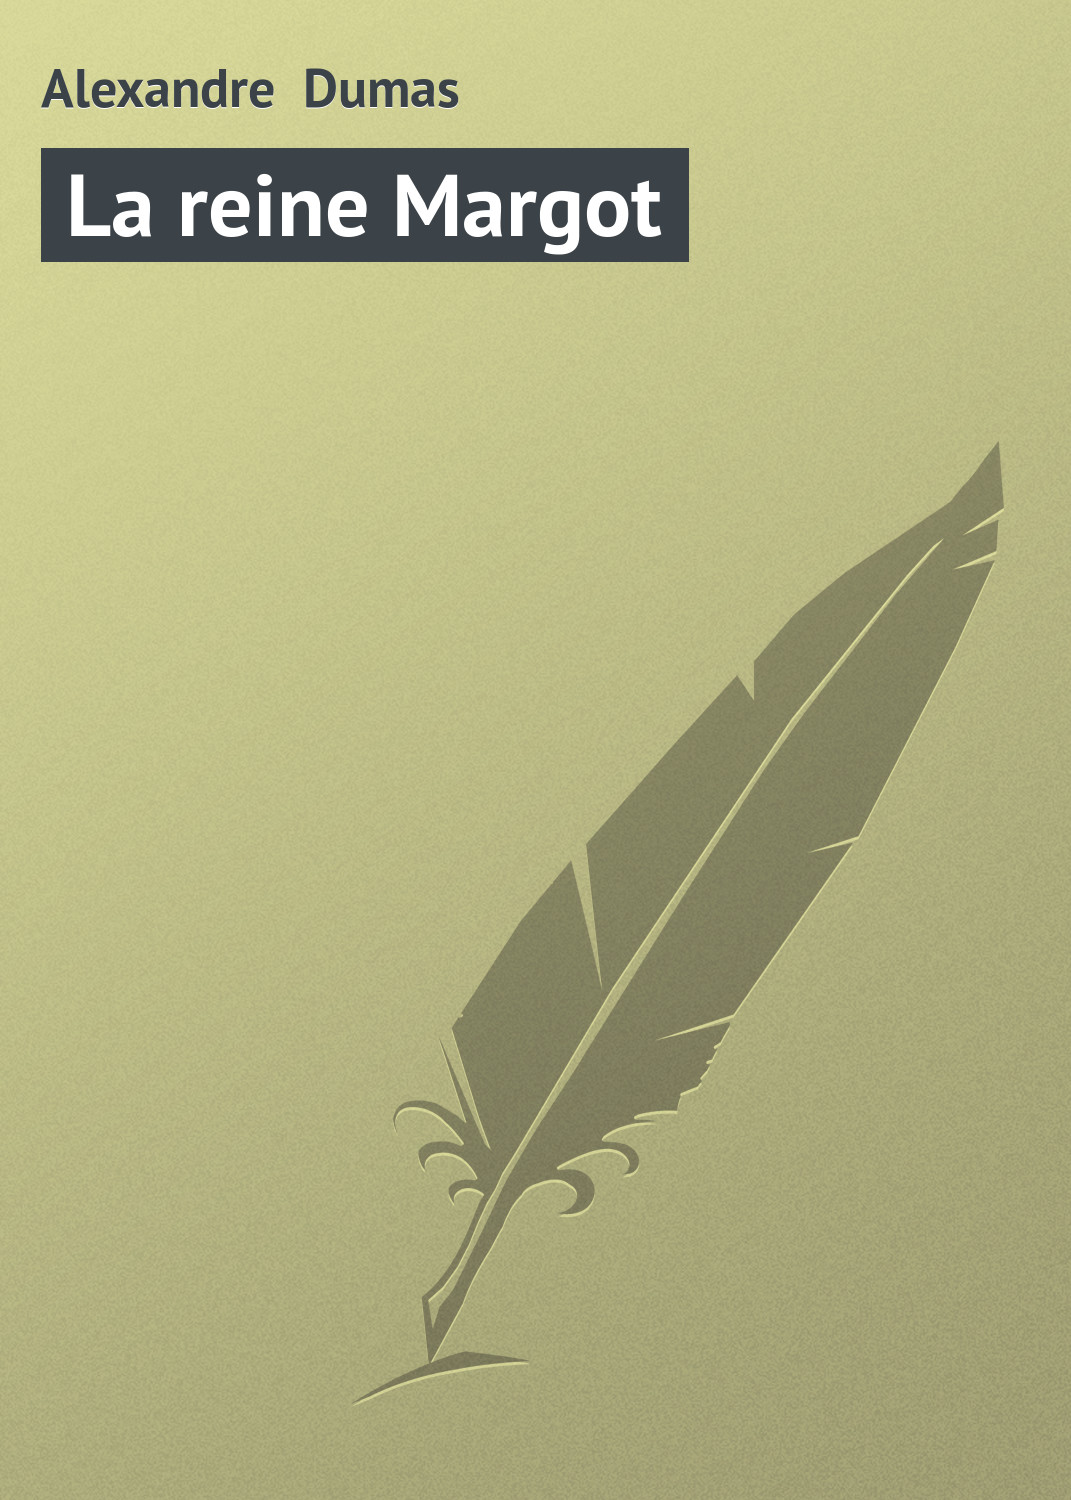 Книга La reine Margot из серии , созданная Alexandre Dumas, может относится к жанру Зарубежная старинная литература, Зарубежная классика. Стоимость электронной книги La reine Margot с идентификатором 21104646 составляет 5.99 руб.